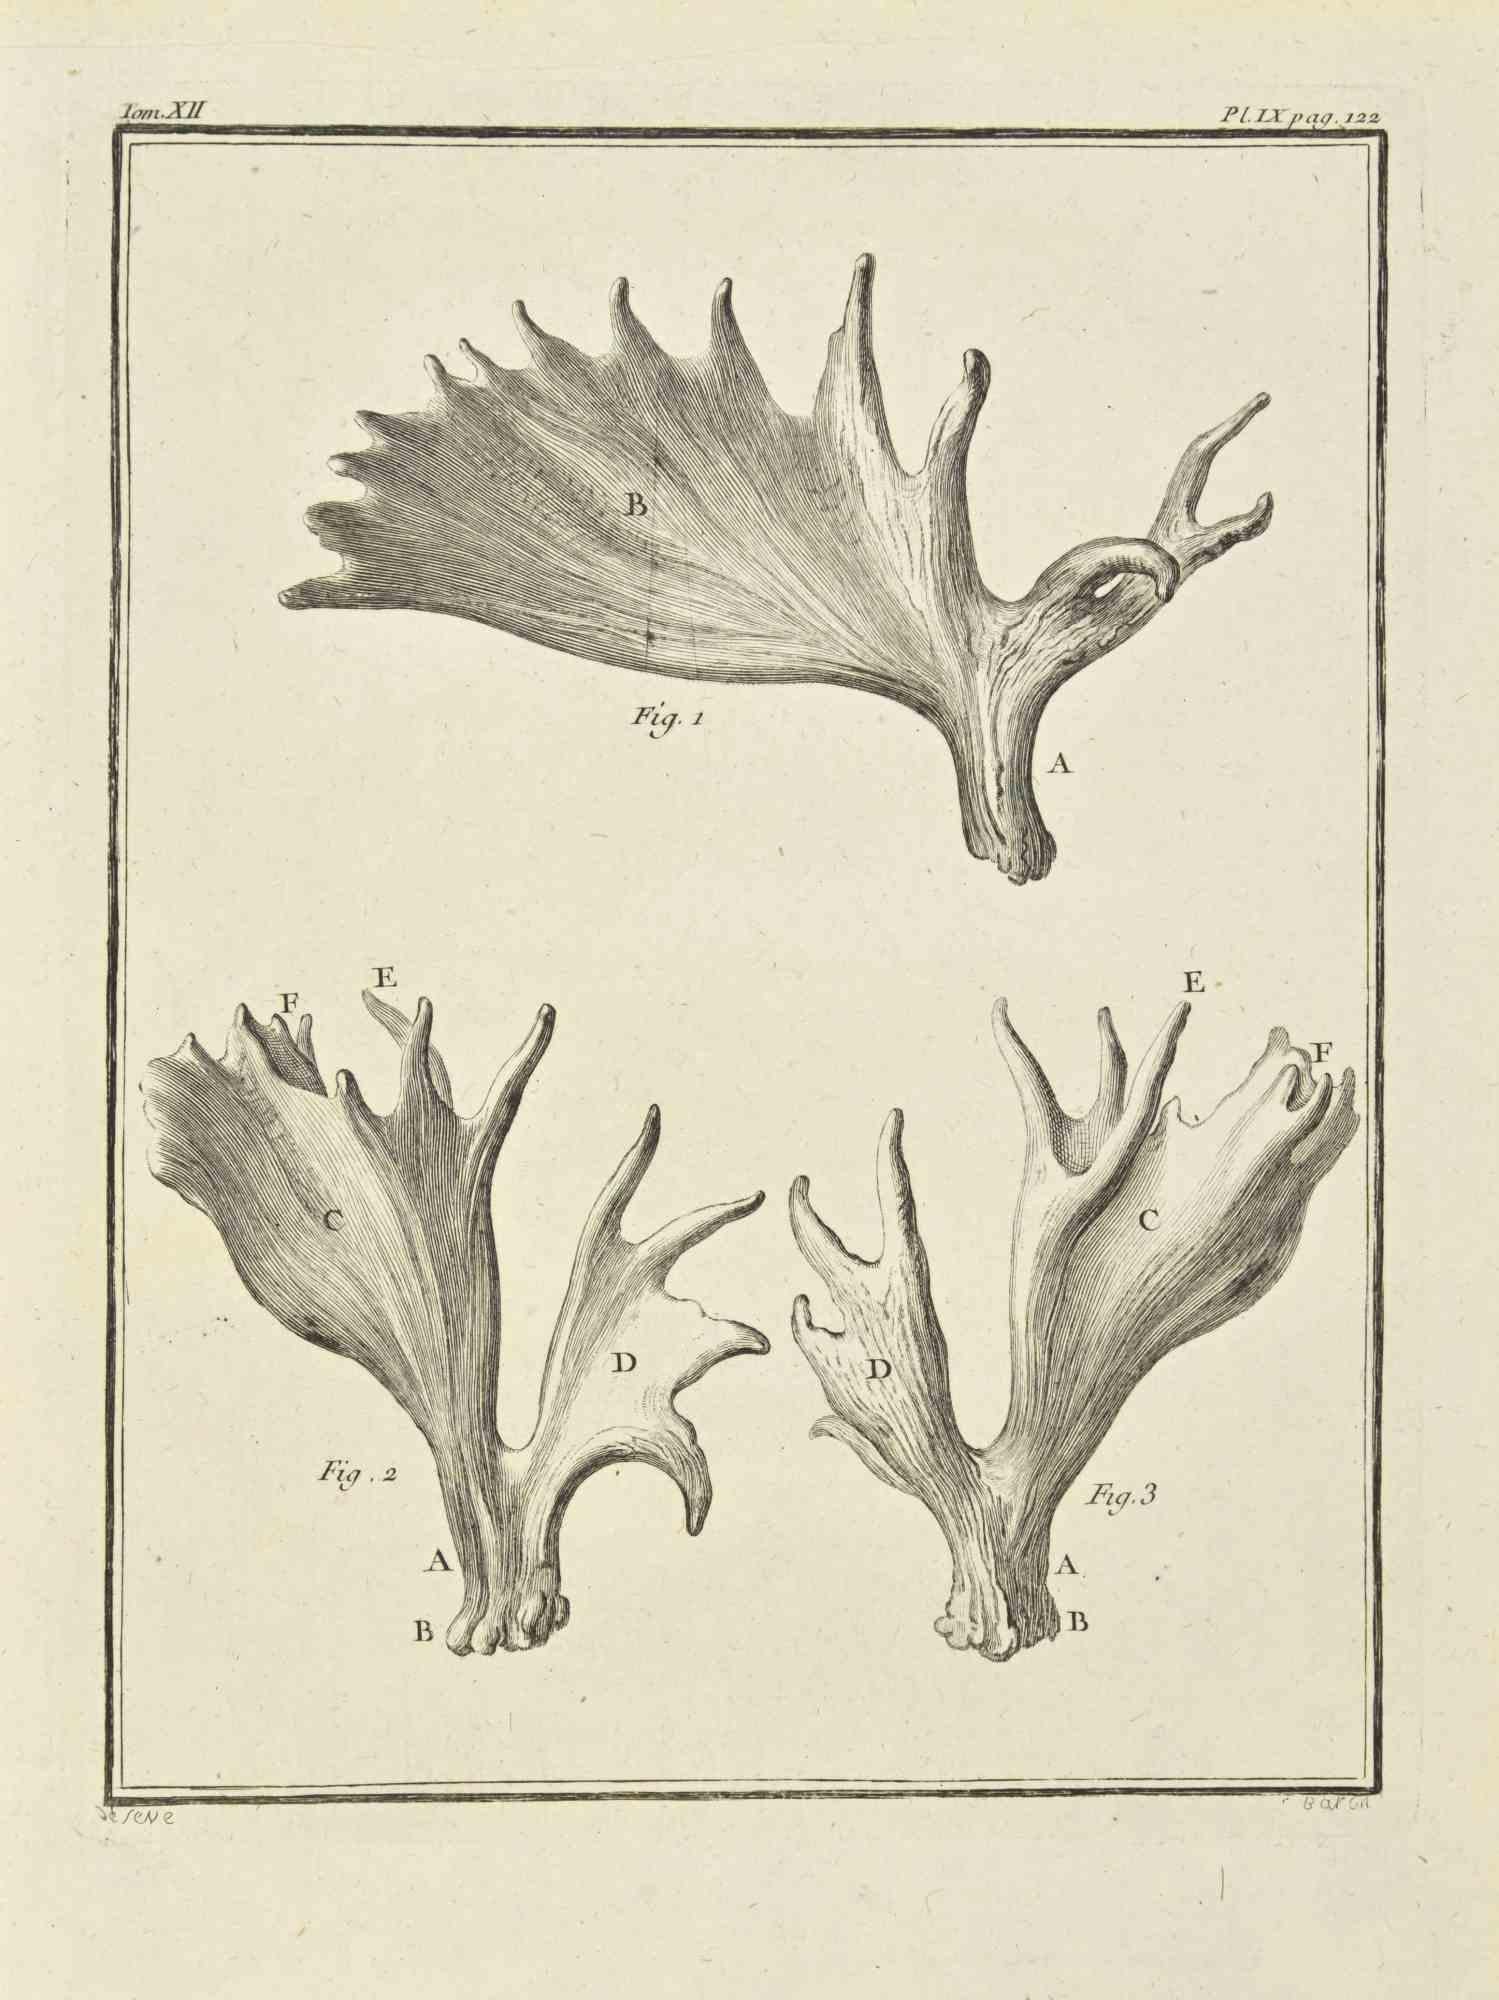 Die Hörner ist eine Radierung von Jacques Baron aus dem Jahr 1771.

Es gehört zu der Reihe "Histoire Naturelle de Buffon".

Die Signatur des Künstlers ist unten rechts eingraviert.

Gute Bedingungen.